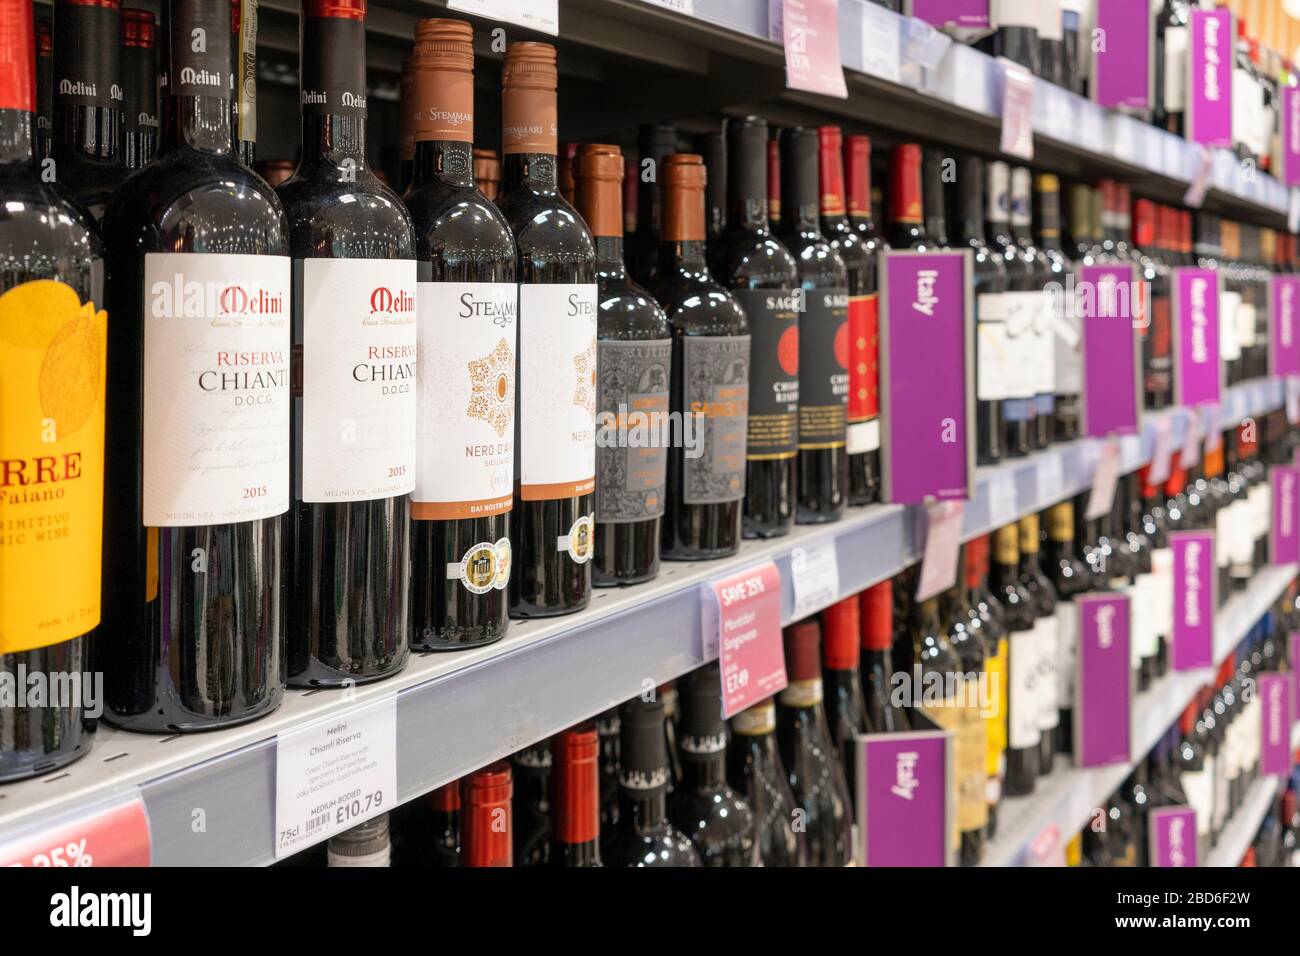 Rotweinflaschen auf dem Display in Regalen zum Verkauf mit Herkunftslandetiketten im Waitrose Supermarkt, Großbritannien. Thema - Alkohol, Alkoholismus, sucht Stockfoto